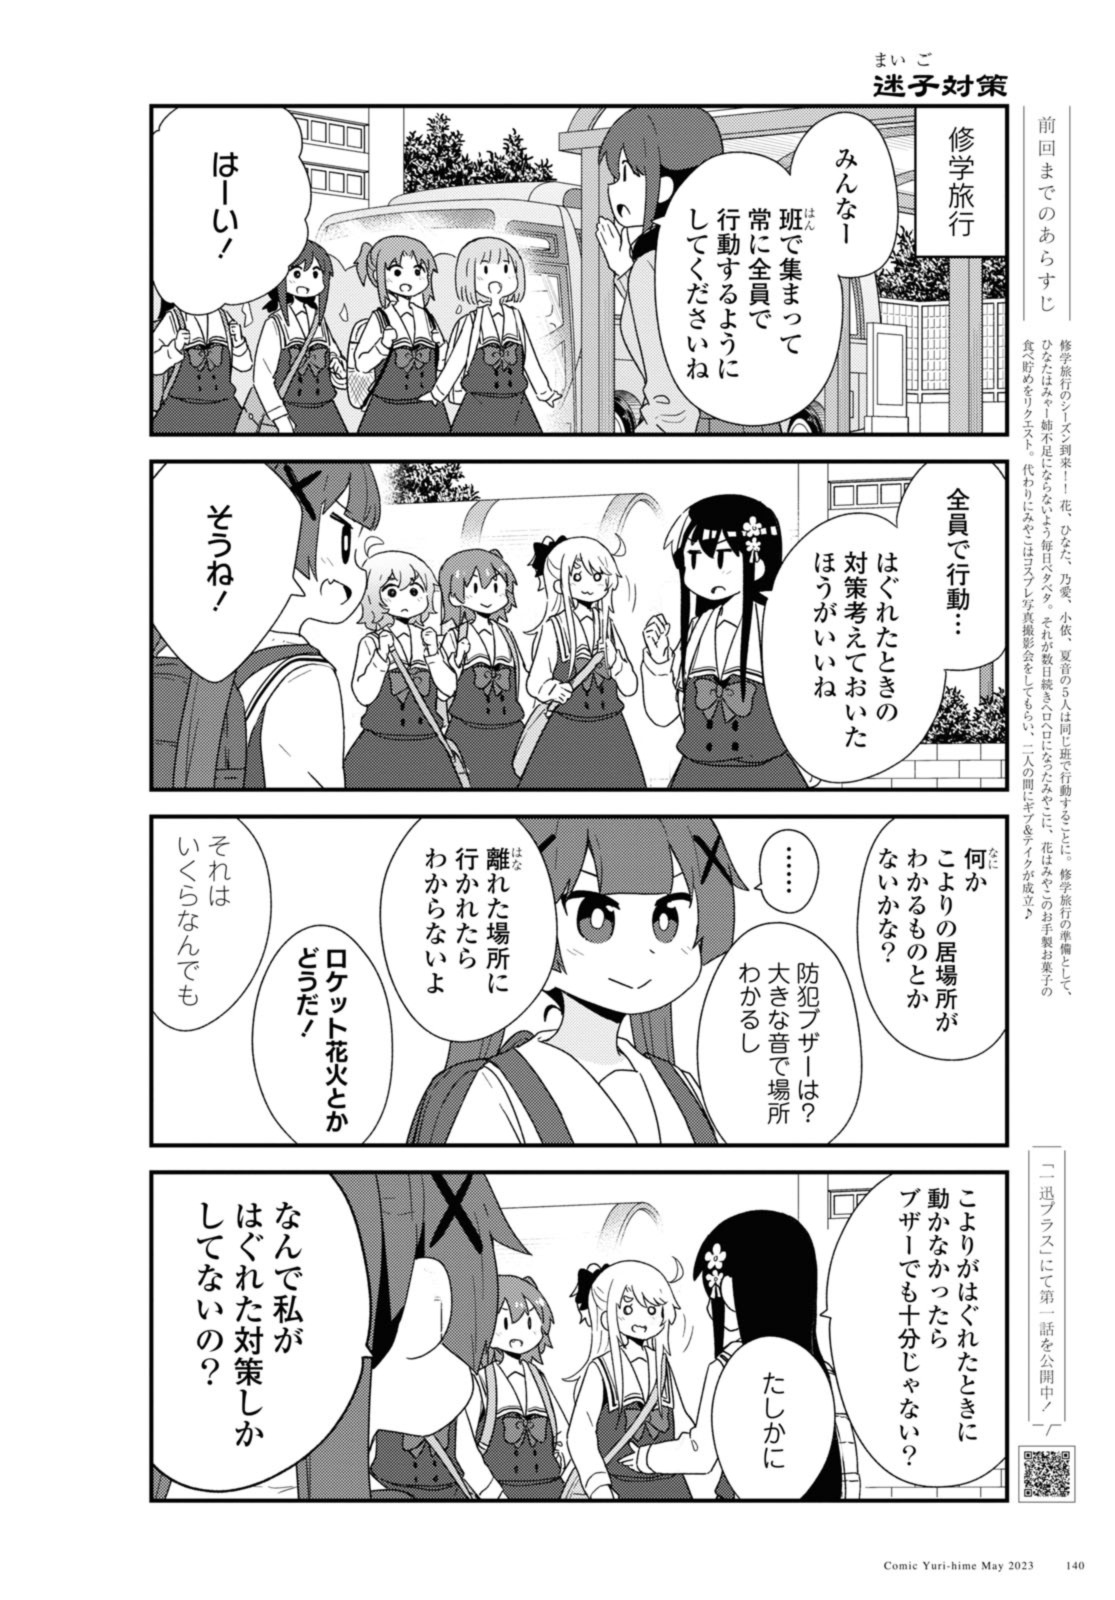 Watashi ni Tenshi ga Maiorita! - Chapter 105 - Page 2